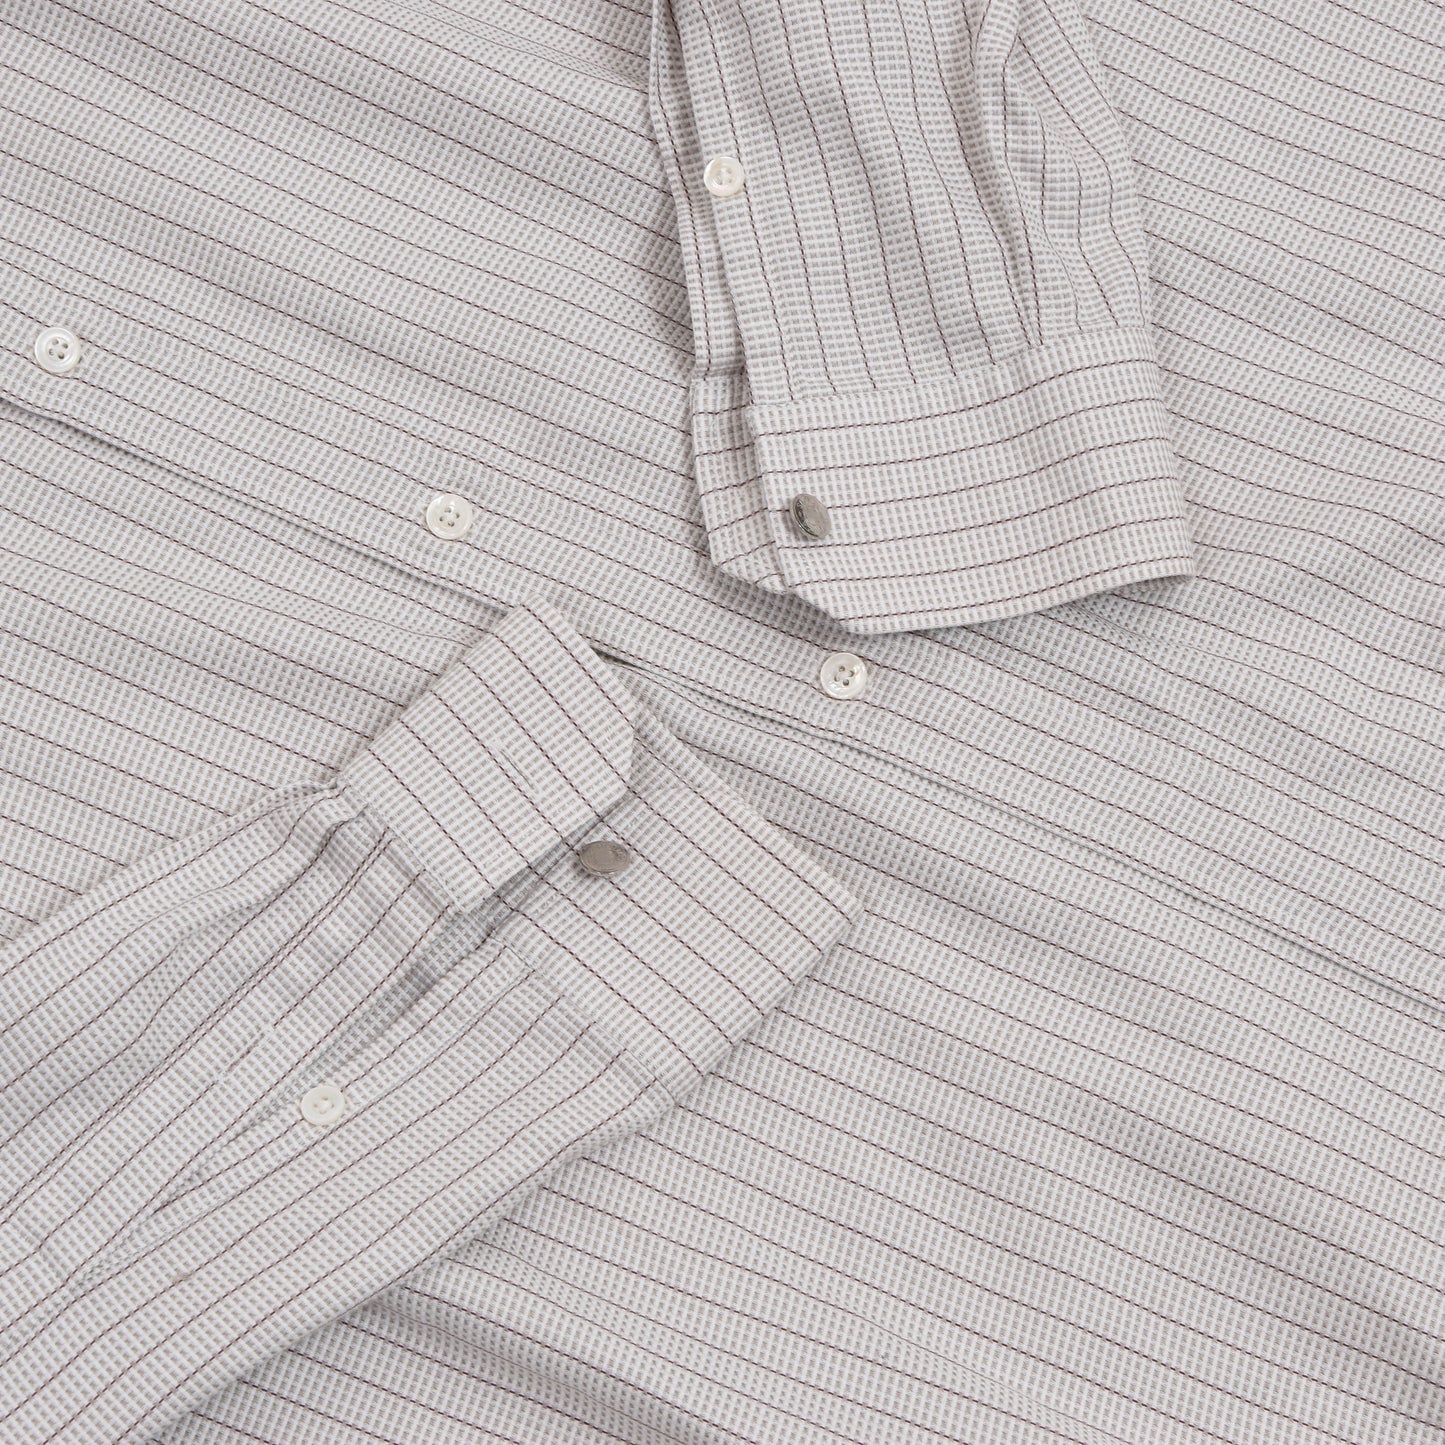 Hermès Paris Dress Shirt Size 44/17.5 - Stripes